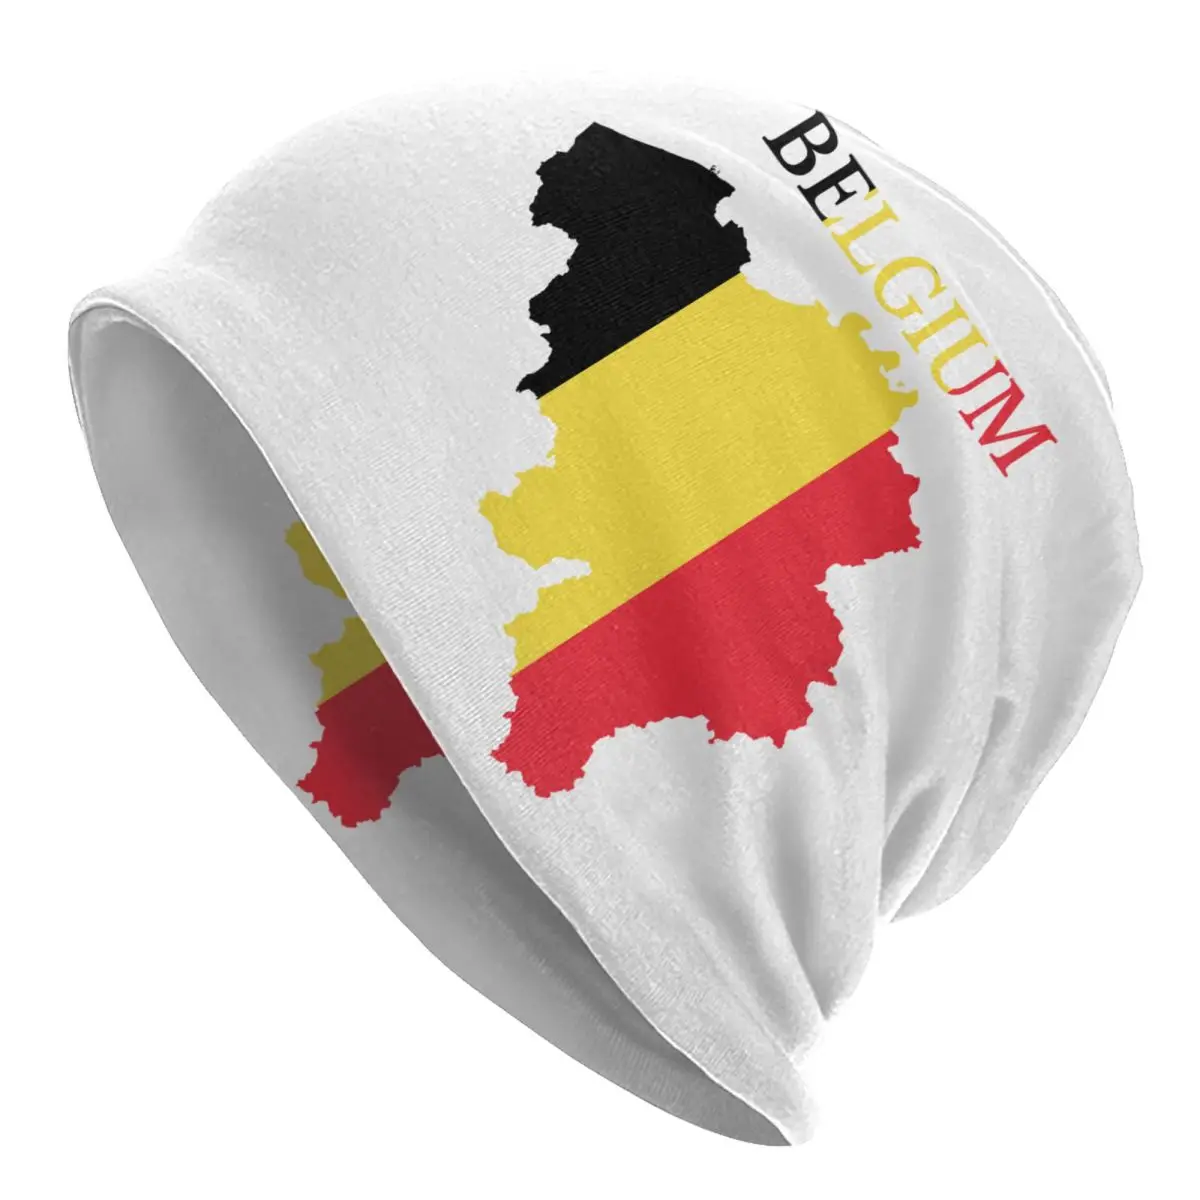 

Головной убор с флагом Бельгии, шляпа, вязаная шапка для мужчин, женщин, мужчин, хип-хоп, унисекс, теплые зимние шапочки для взрослых, шапка